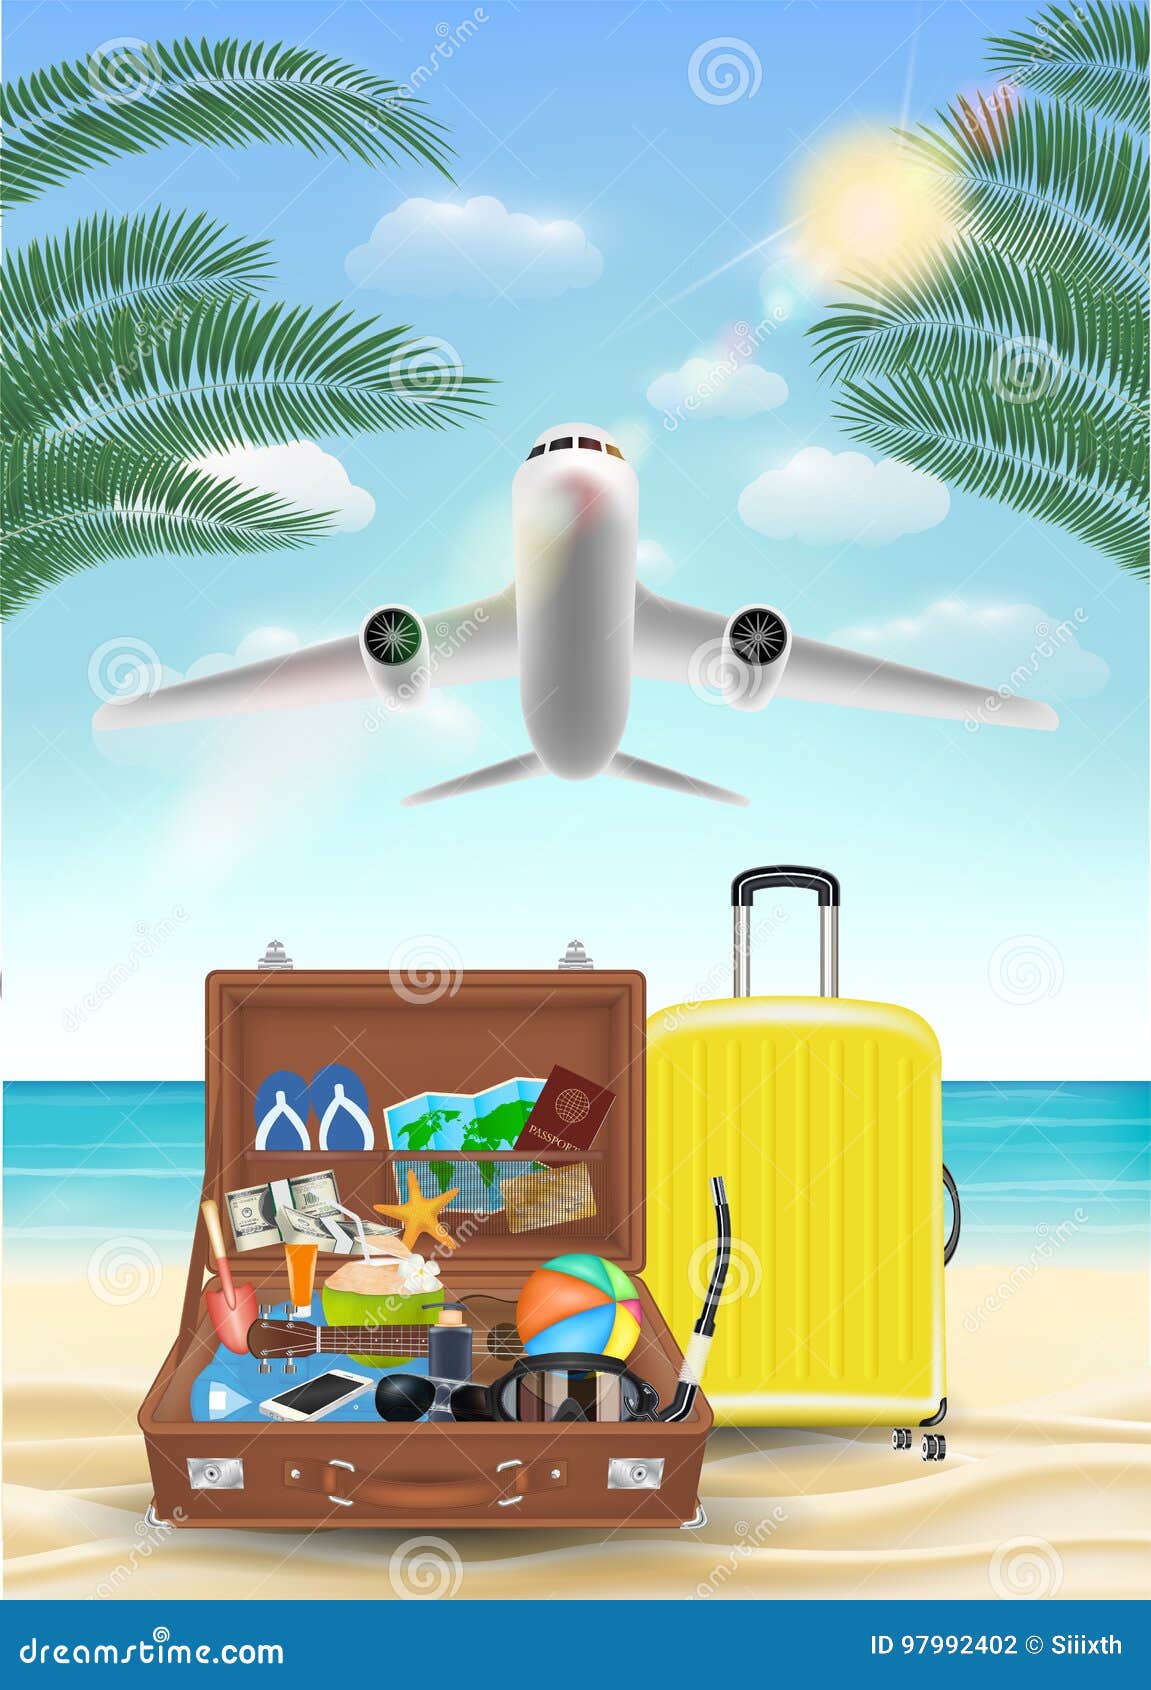 Avión De Aire Que Vuela Al Mar El Objeto Del Viaje De La Playa Ilustración del Vector - de pasaporte, azul: 97992402